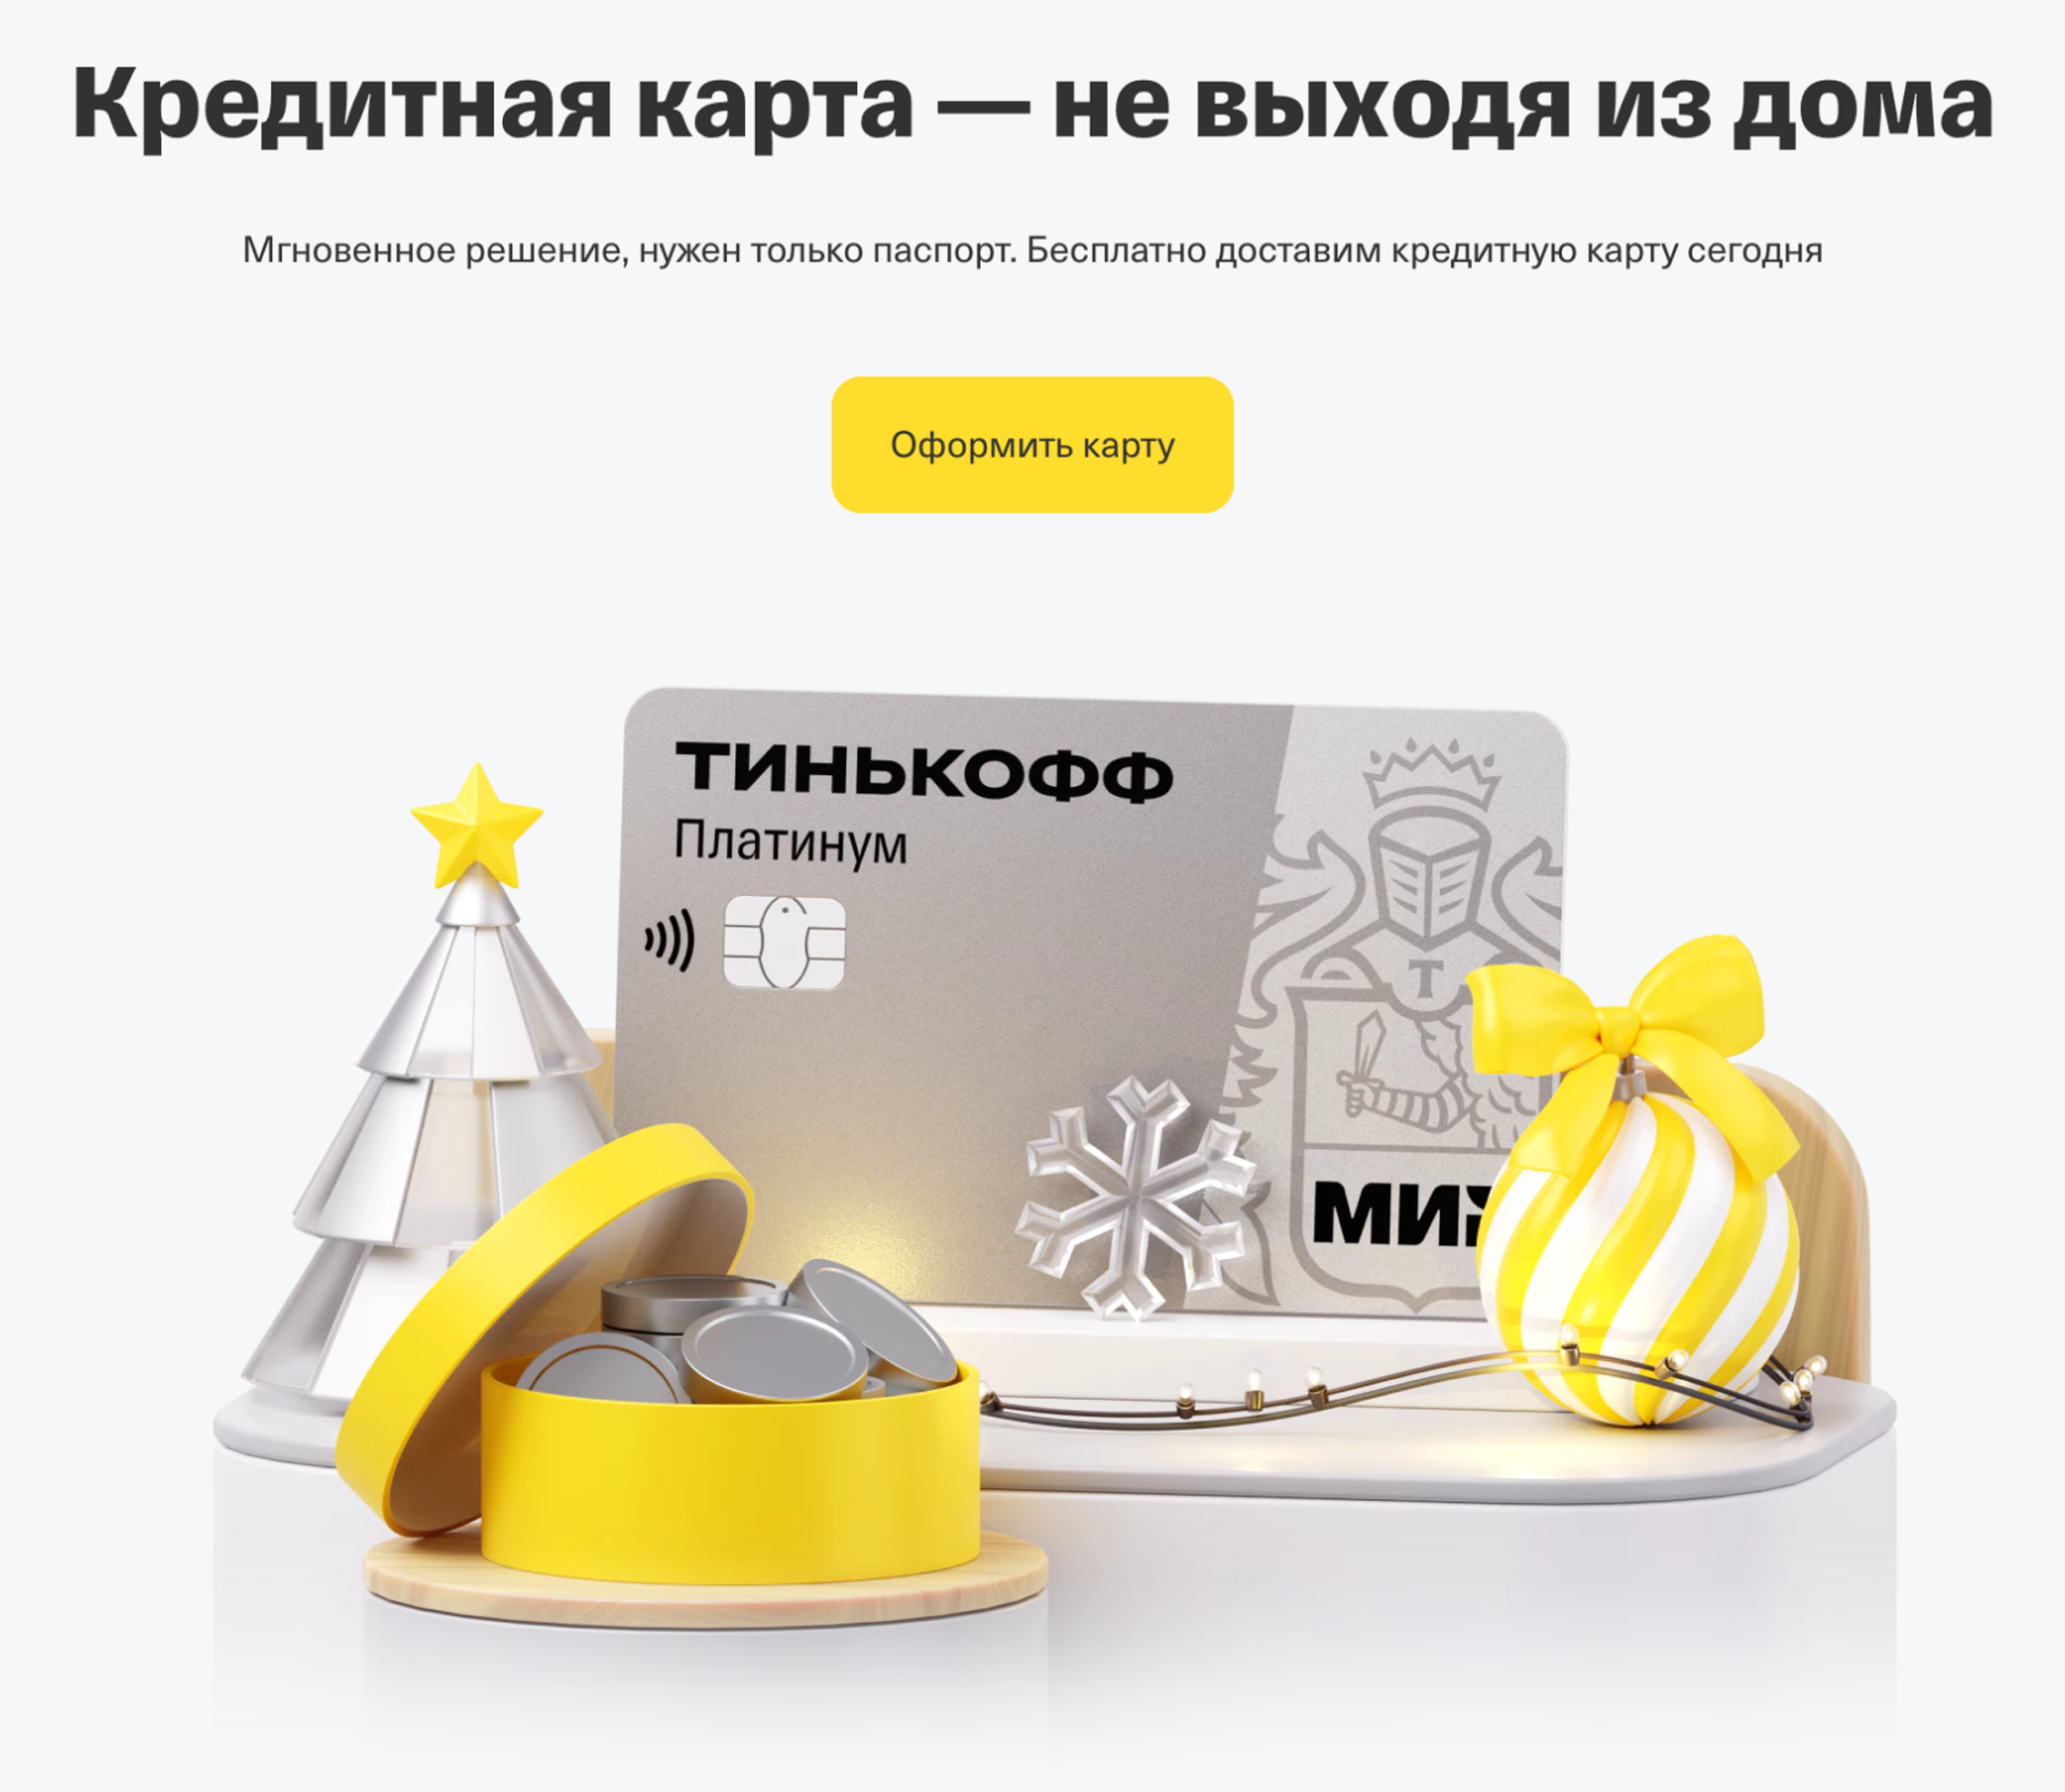 Страница презентует кредитную карту — последовательно рассказывает об условиях и предлагает оформить заявку. Источник: tinkoff.ru